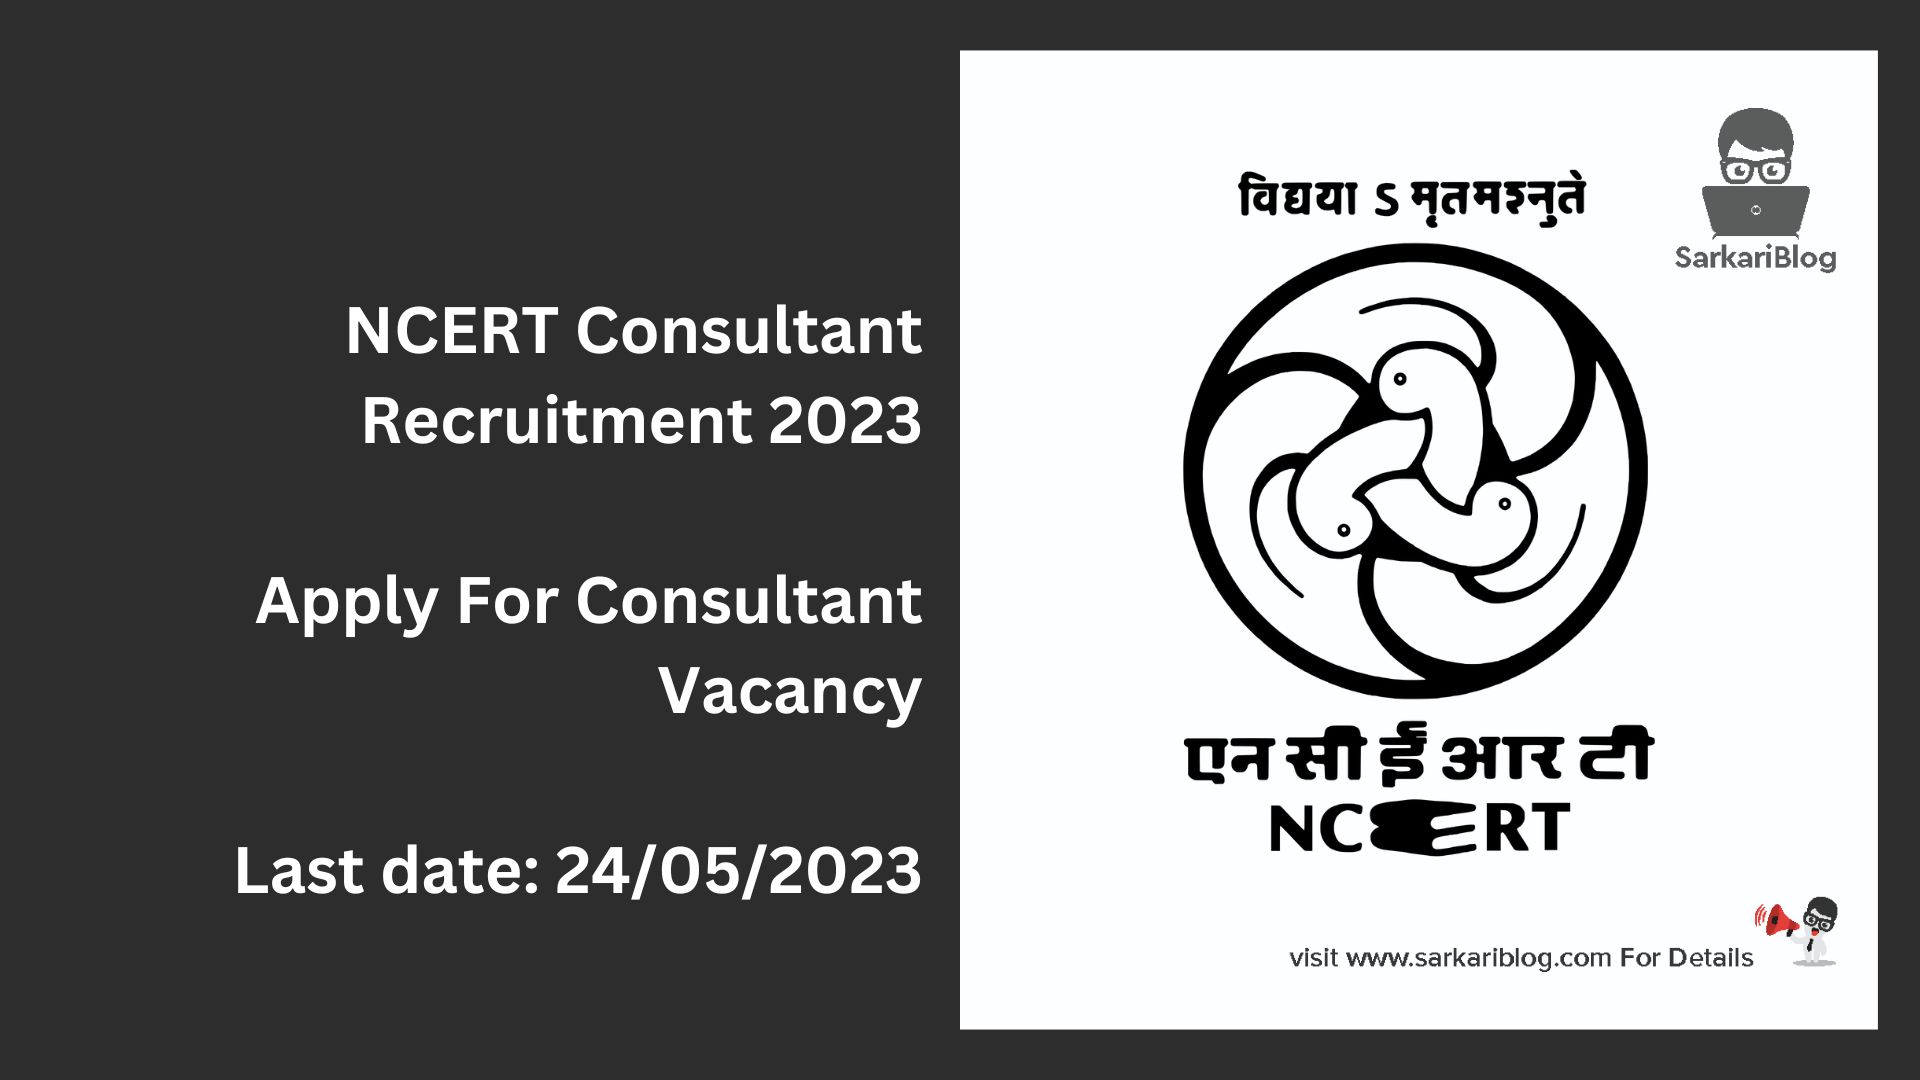 NCERT Consultant Recruitment 2023